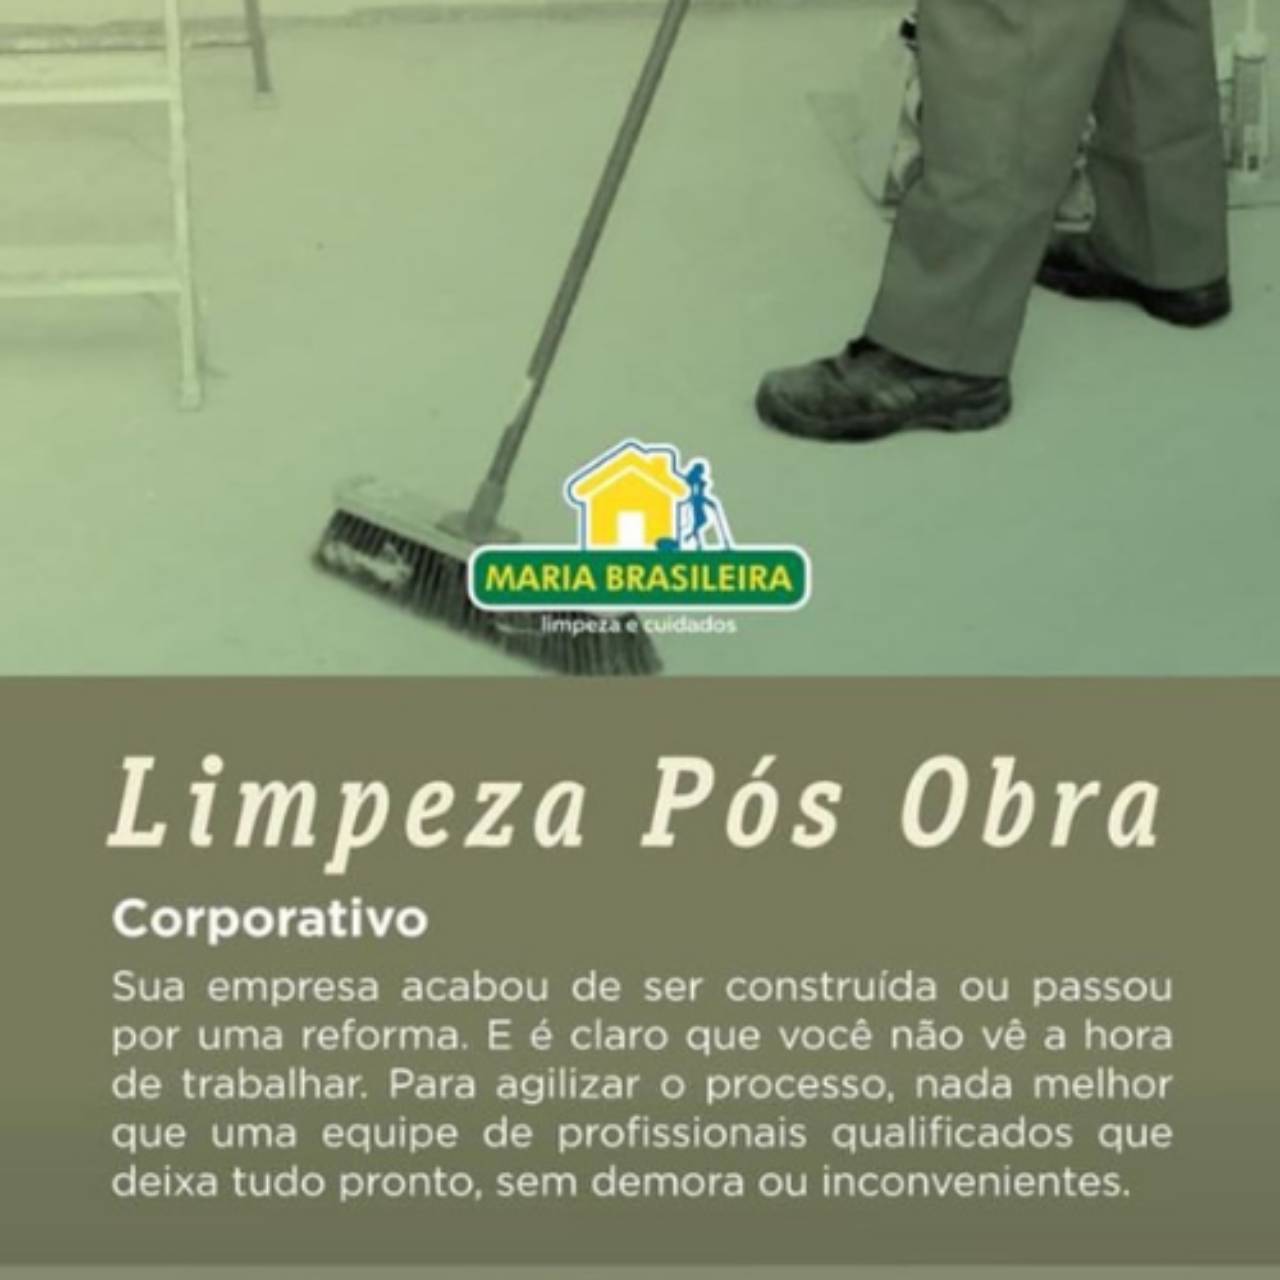 HMG Limpeza e Conservação - Limpeza Pós Obra em São Paulo